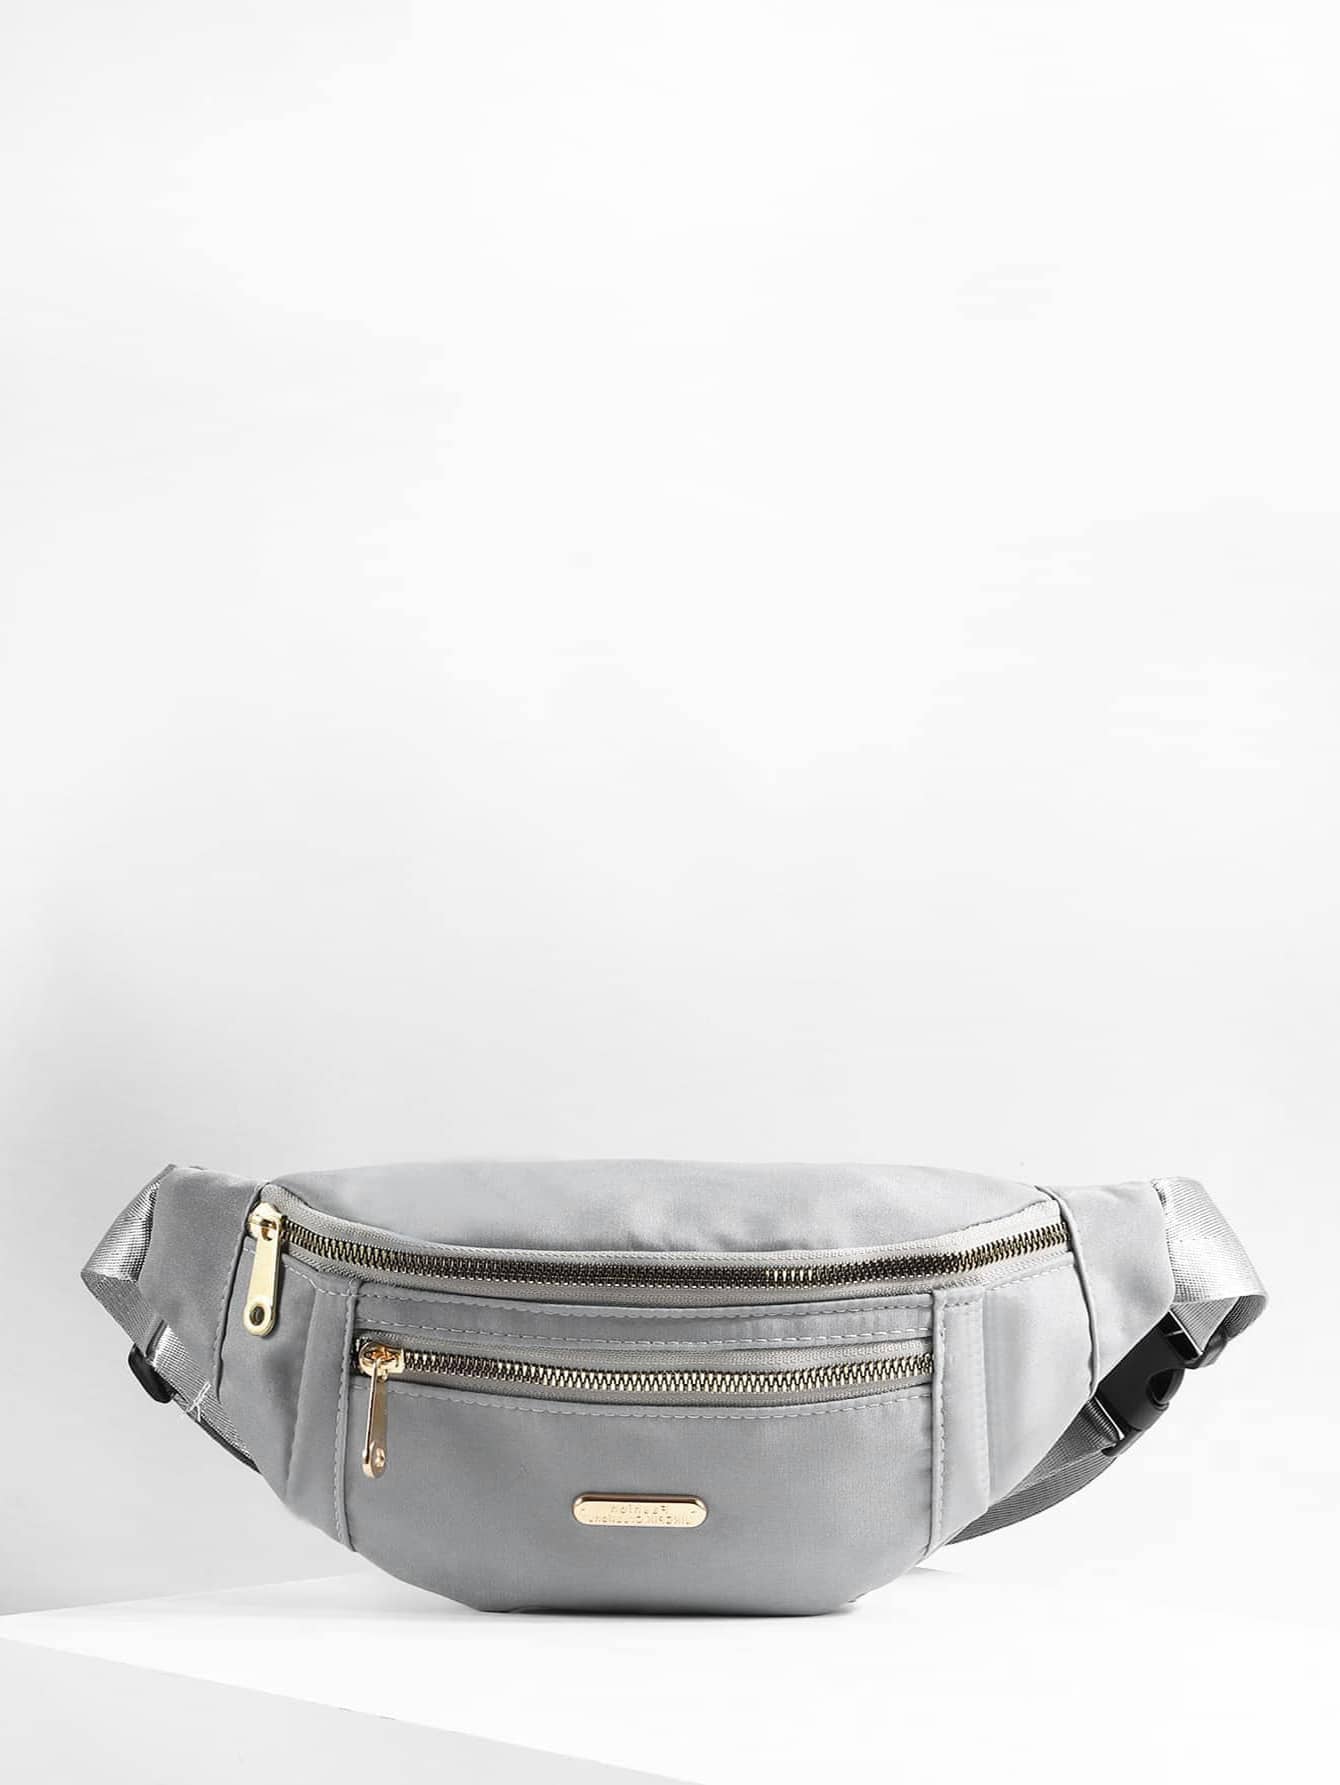 Поясная сумка с металлическим декором и пряжкой, серый